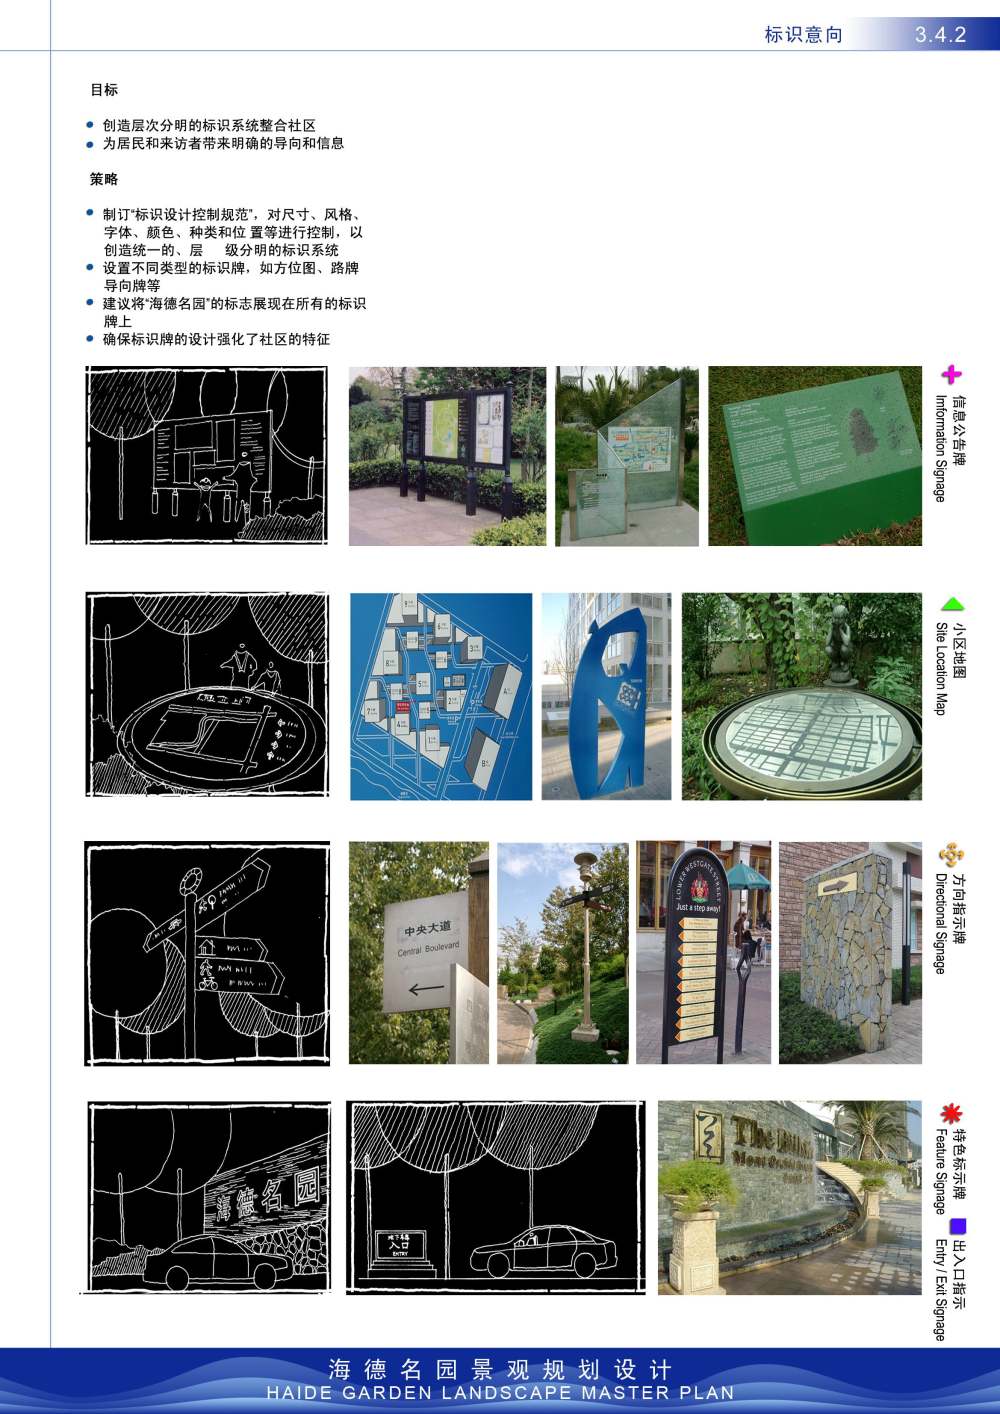 海德名园景观规划设计_3.4.2.jpg